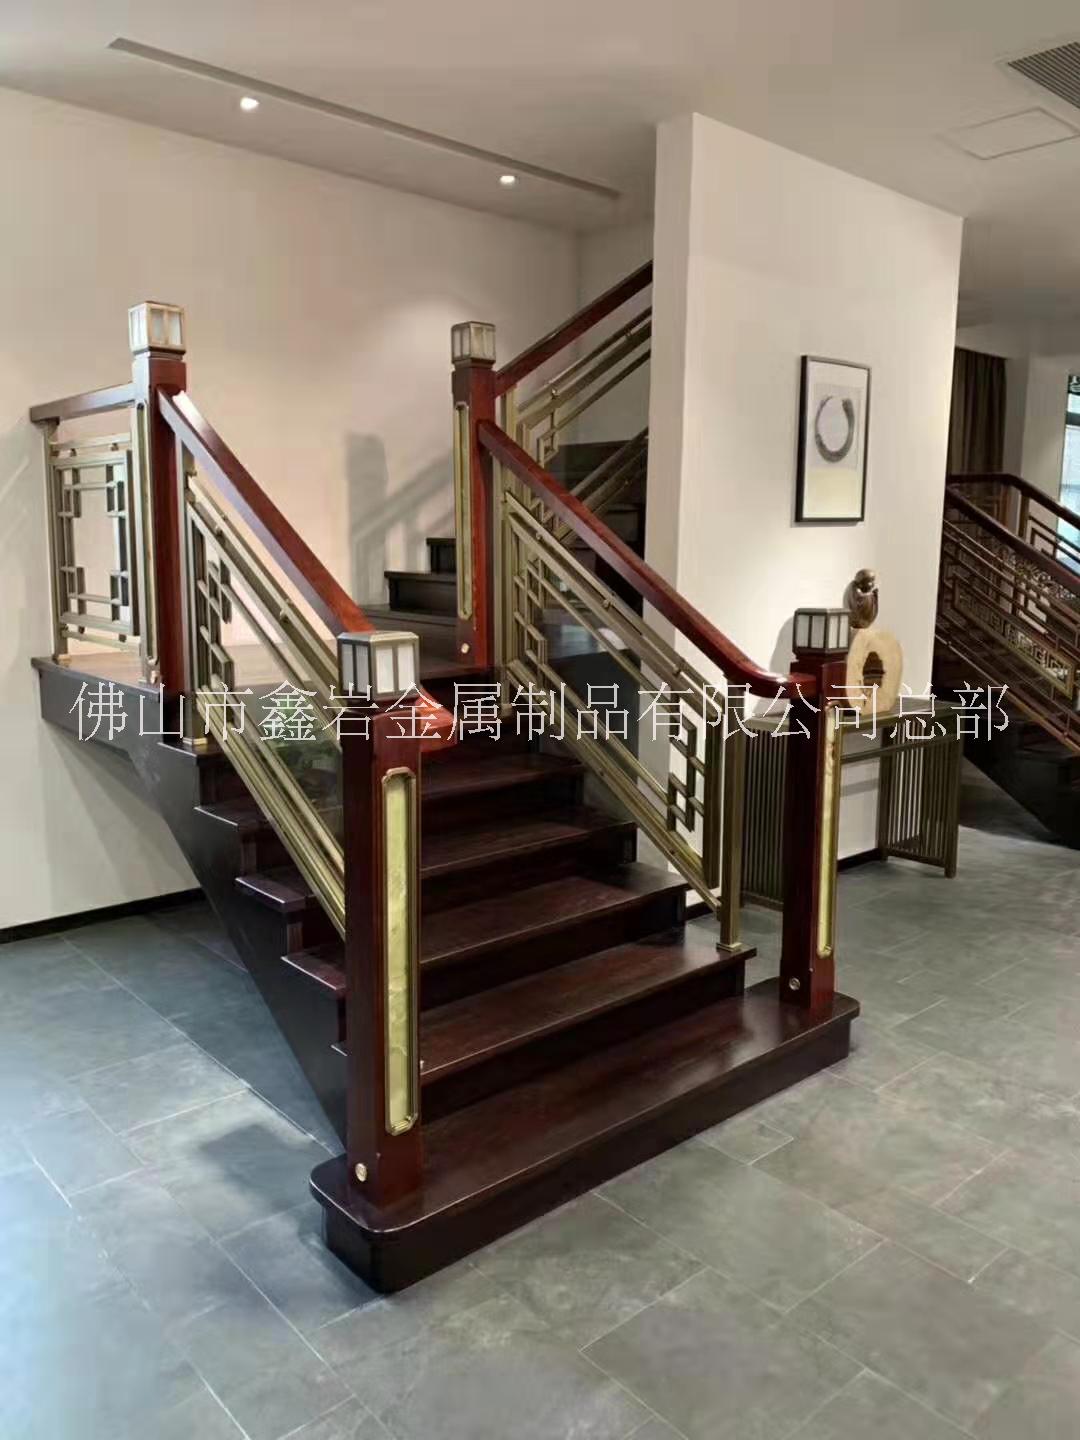 新中式铜楼梯护栏金属拉丝扶手简约现代装饰钢化玻璃铜护栏定制